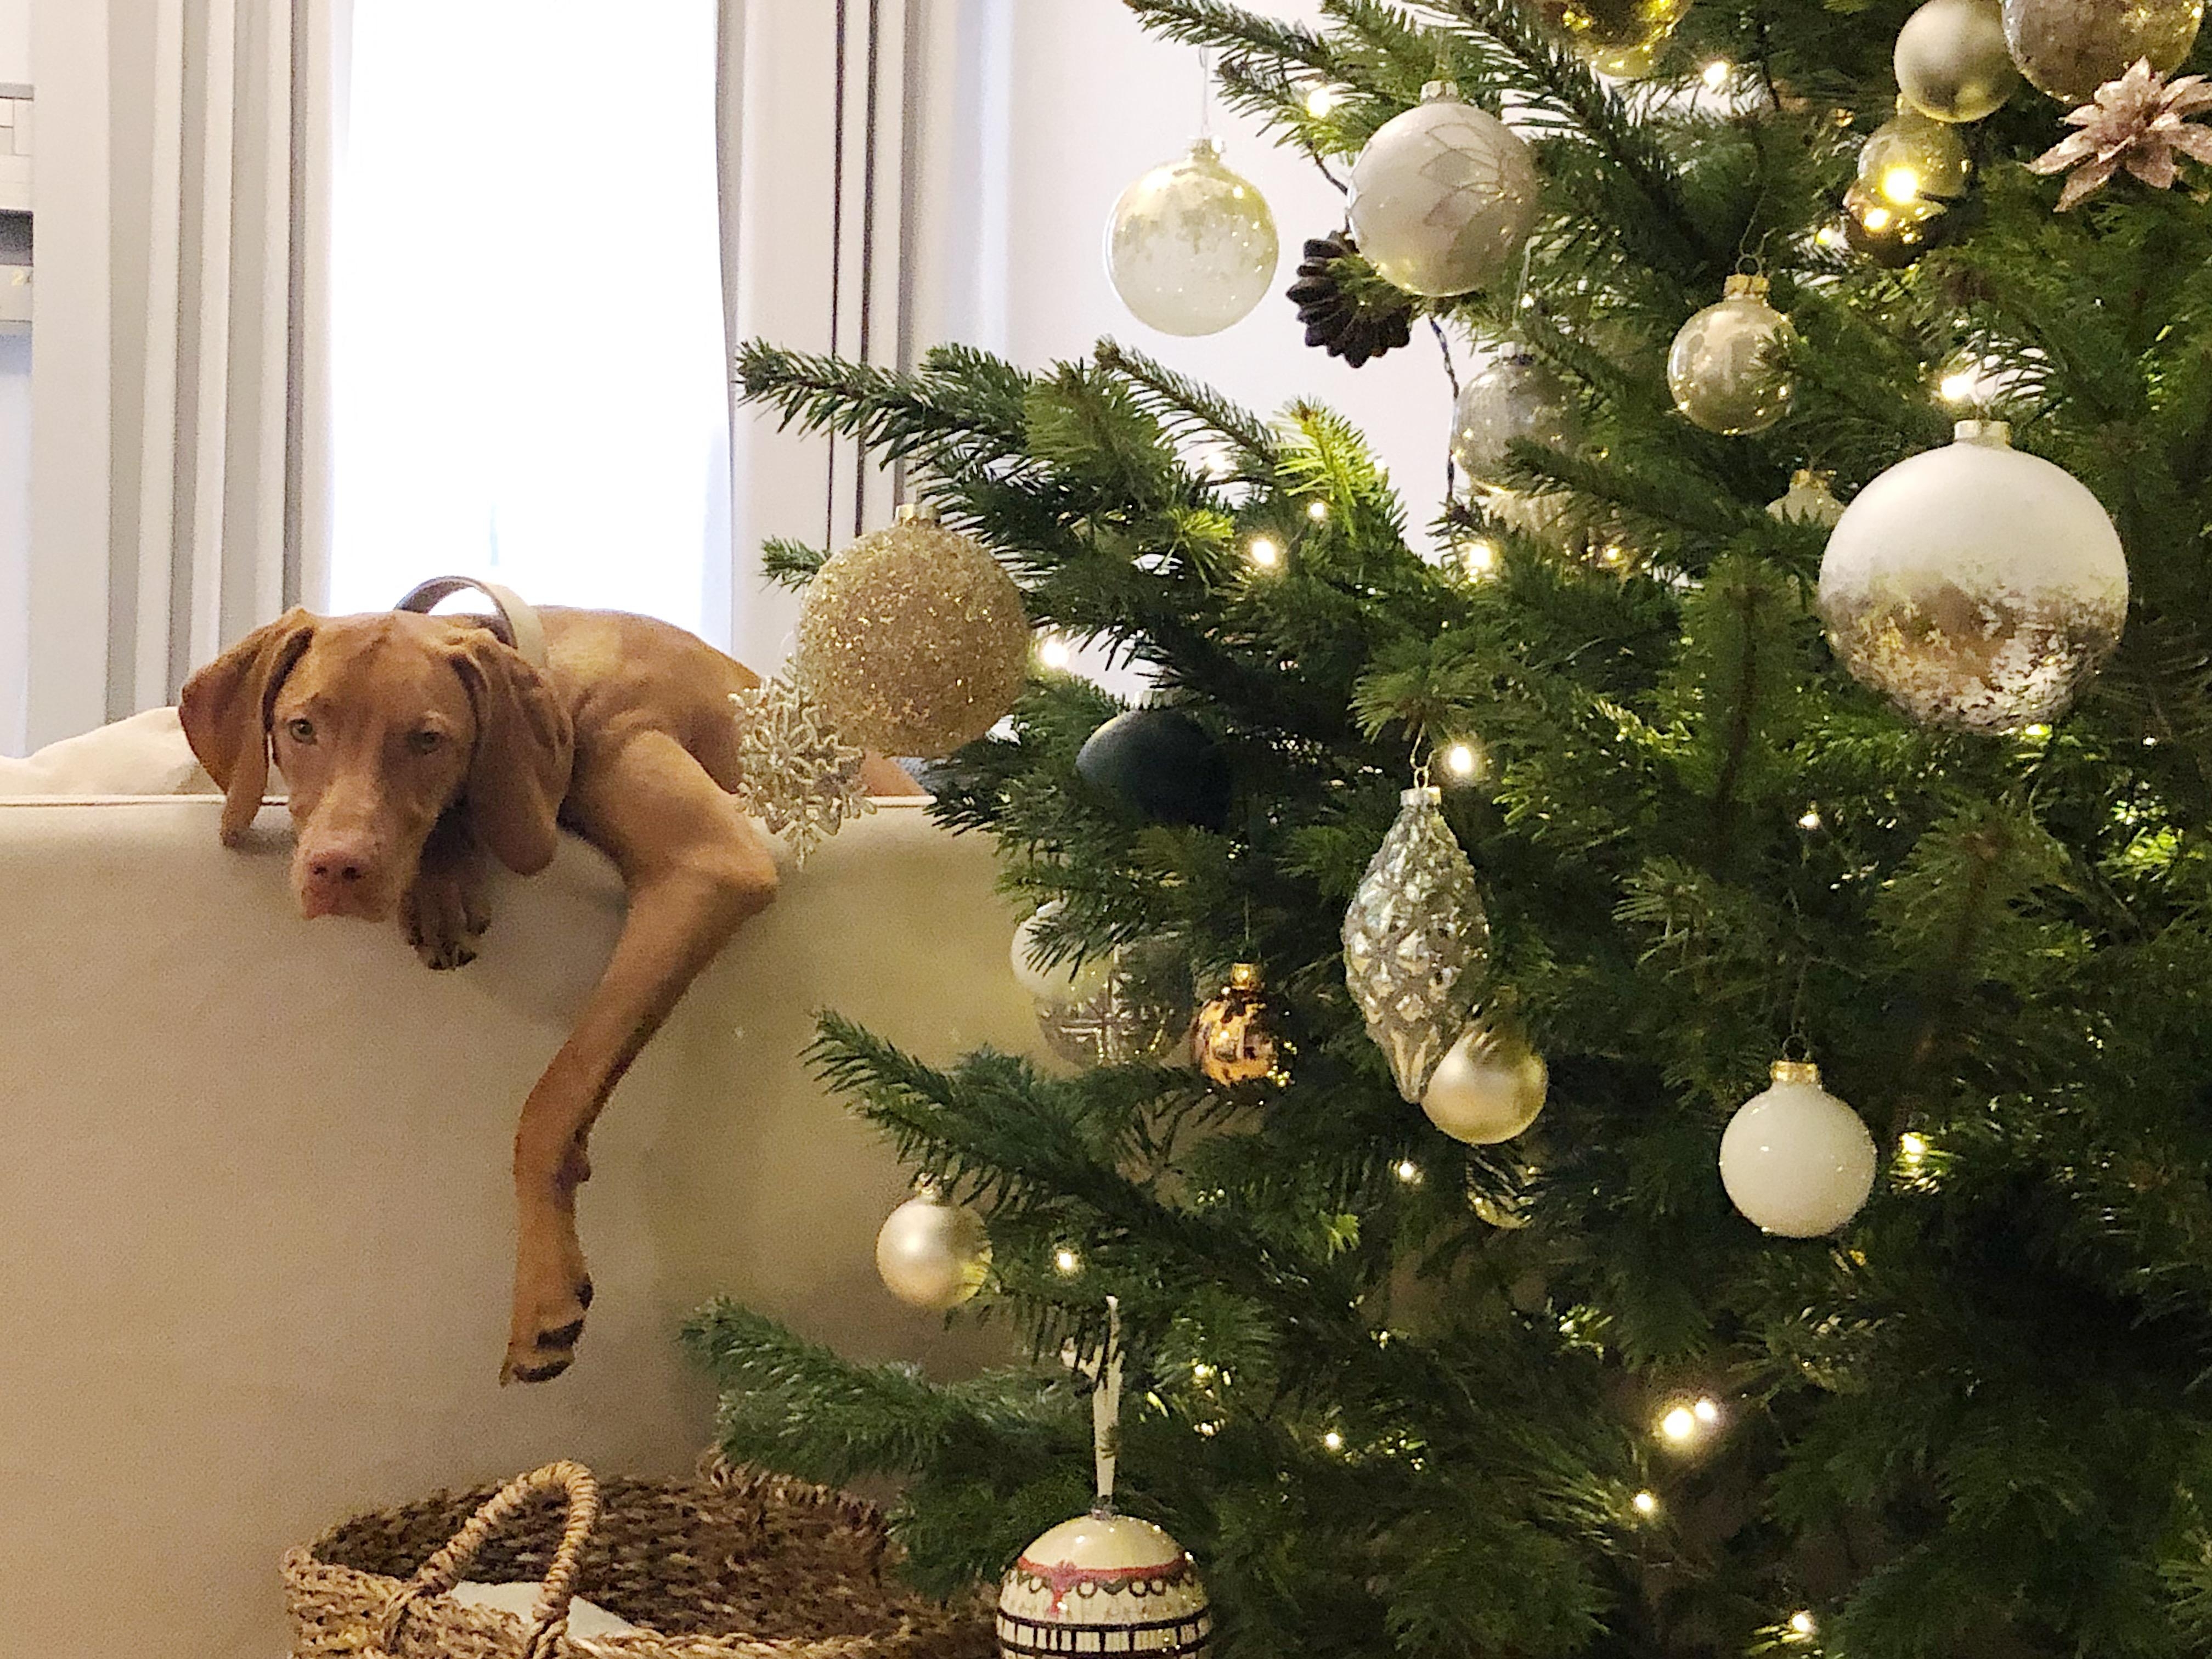 Wilmas erster Weihnachtsbaum lässt sie ziemlich kalt. #weihnachtsbaum #hundeliebe #wohnzimmer 